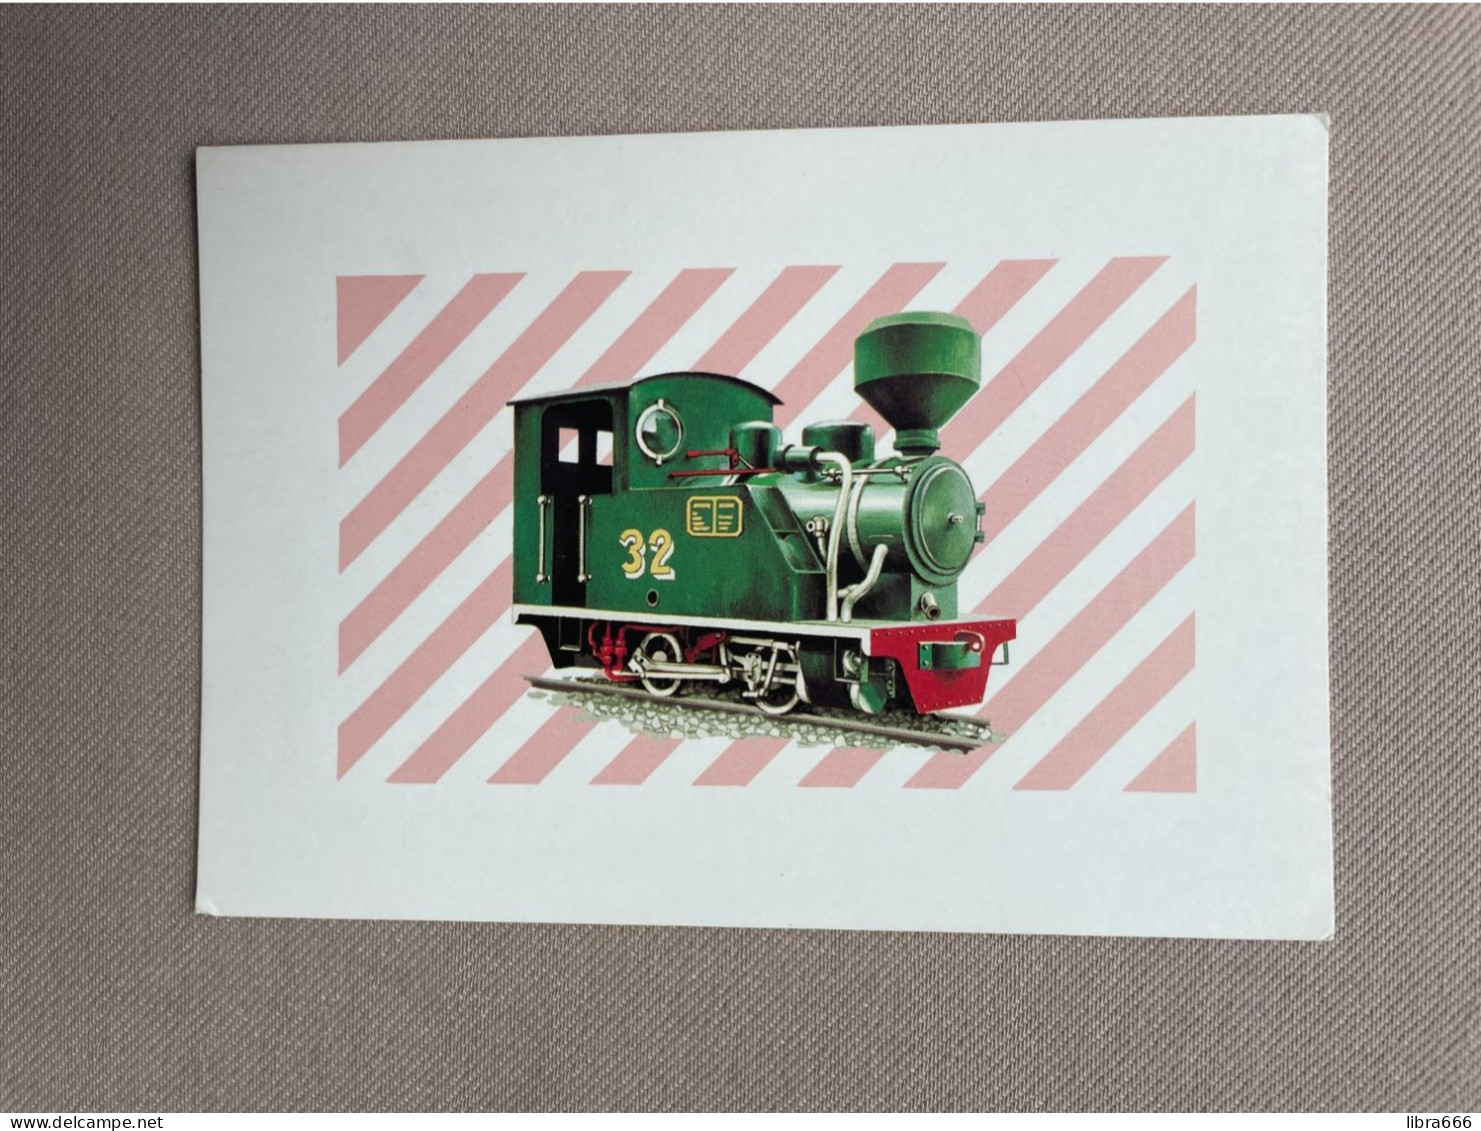 1990 - Postage Stamp Card - THAILAND - Steam Locomotive "Sung Noen" Nr. 32 - Communications Authority 29-2 / 2533 - Eisenbahnen